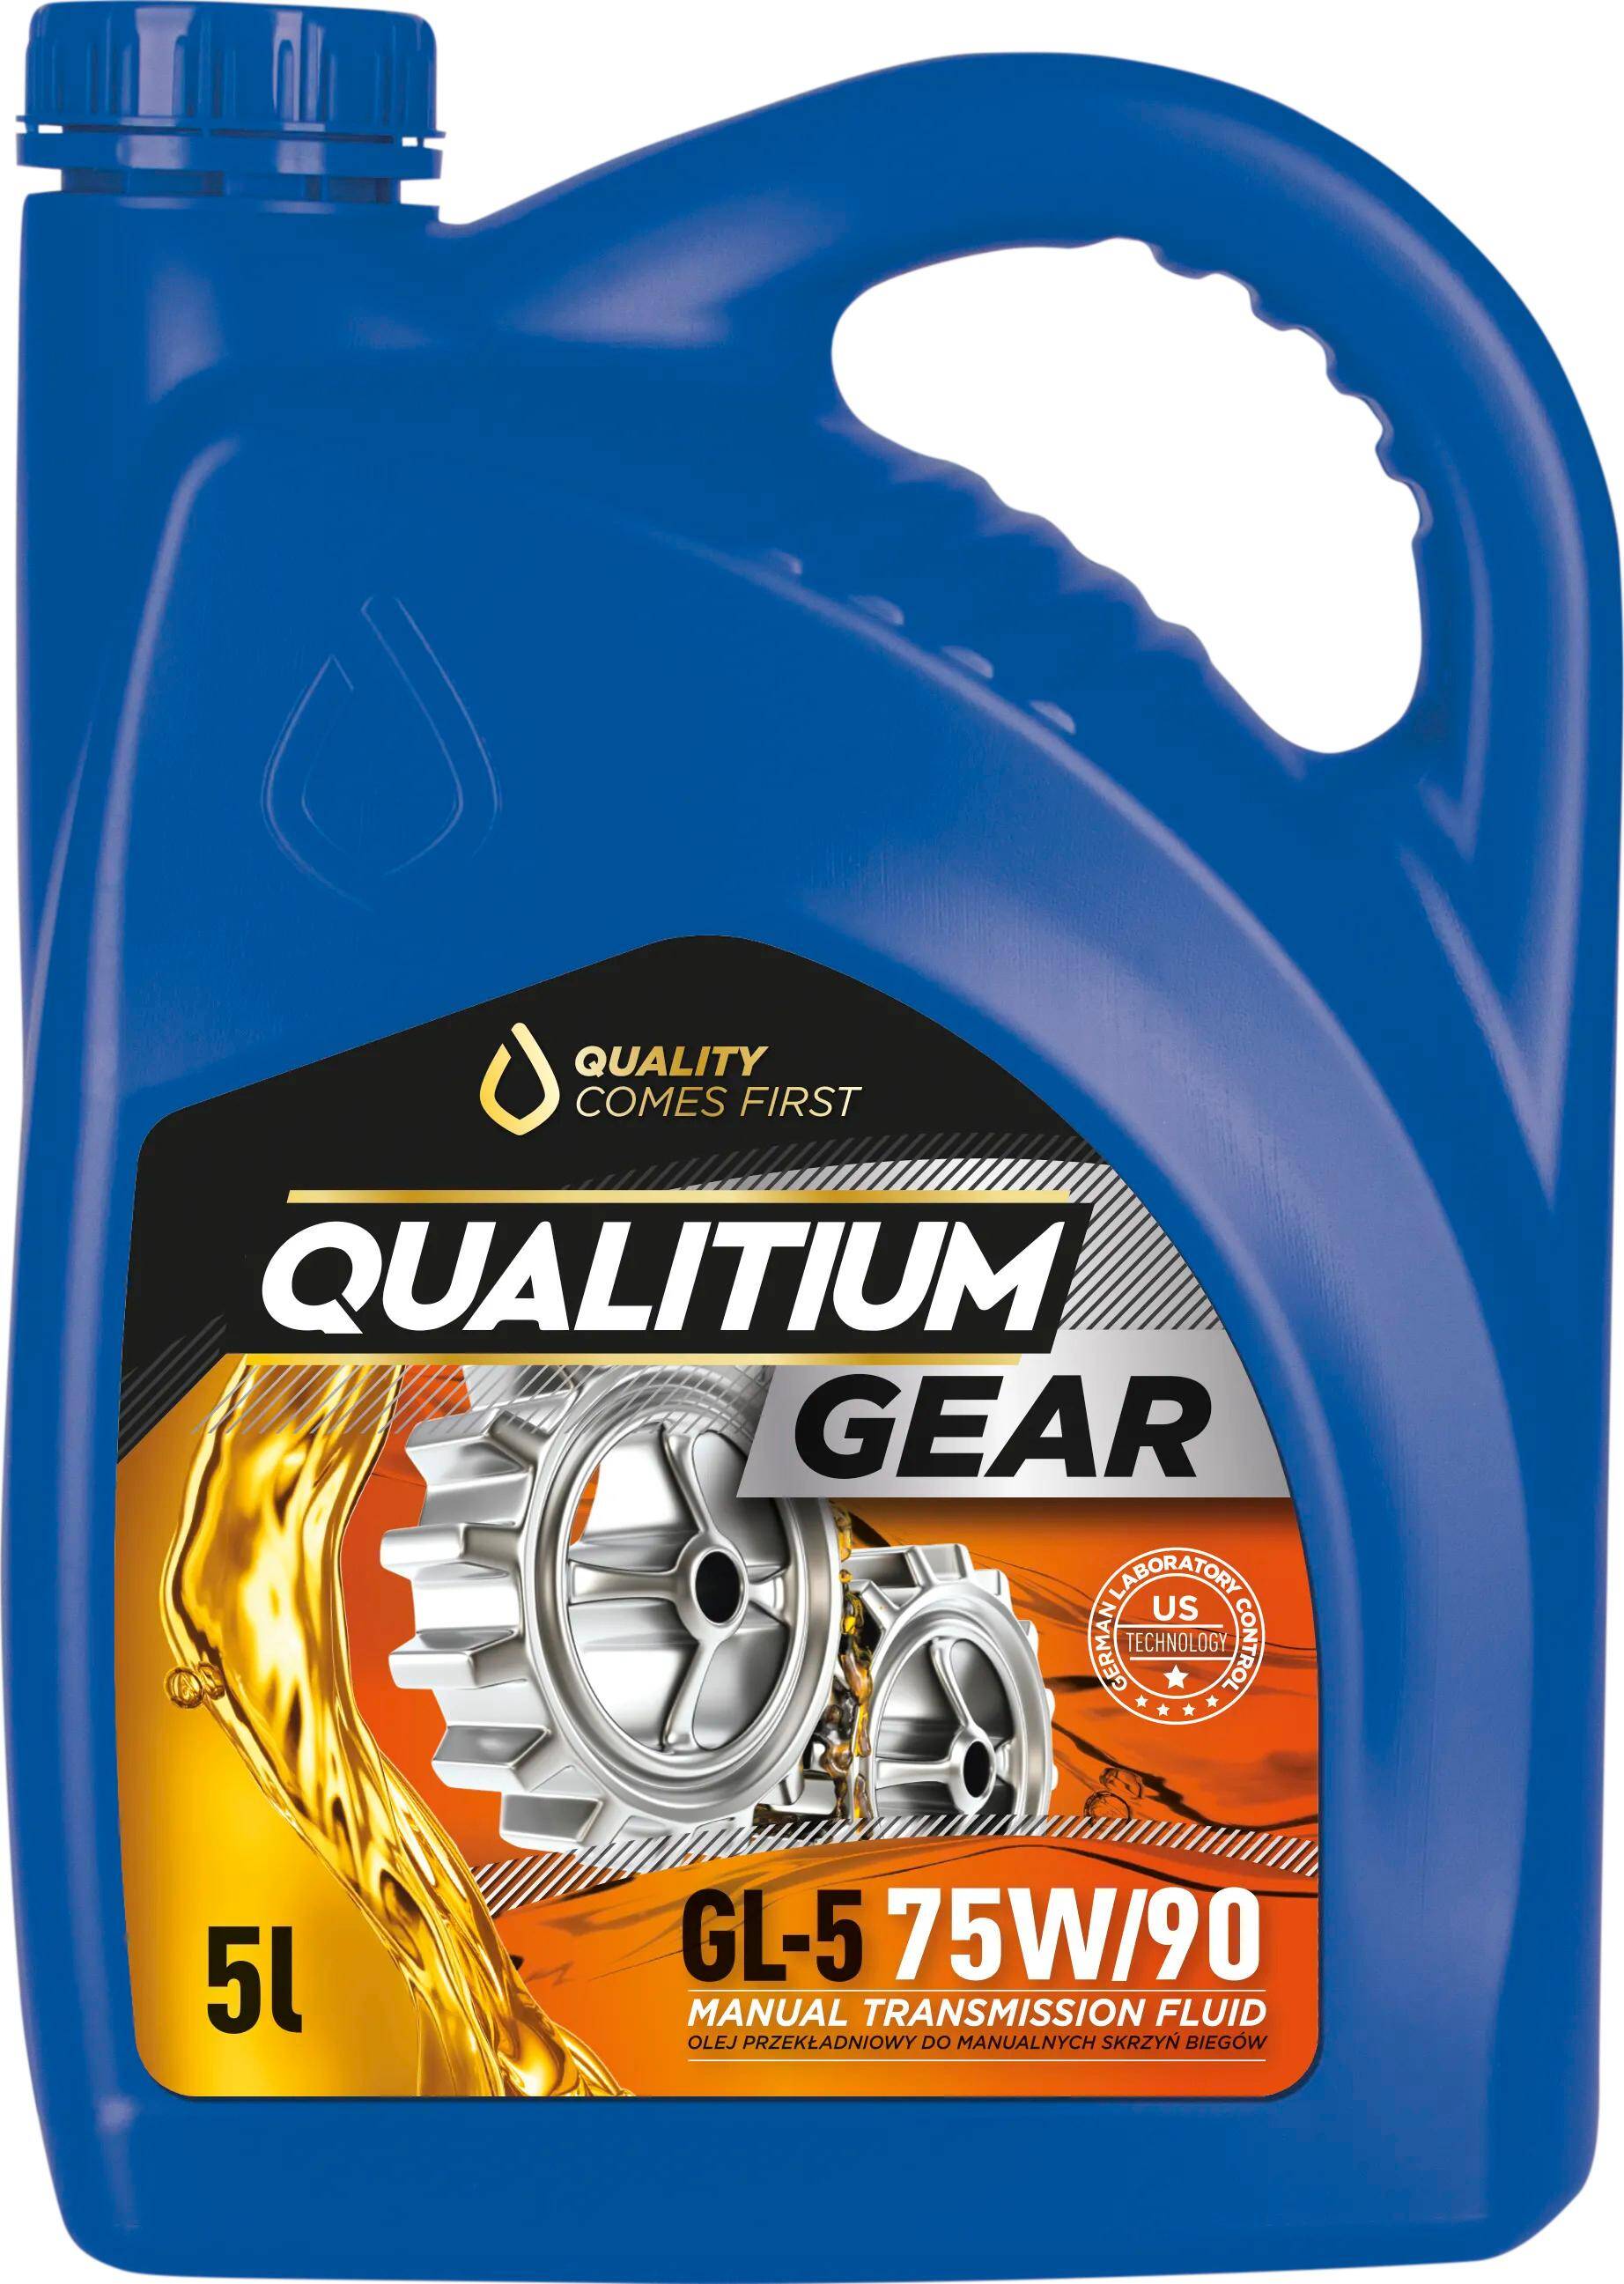 Qualitium Gear GL5 75W90 5L